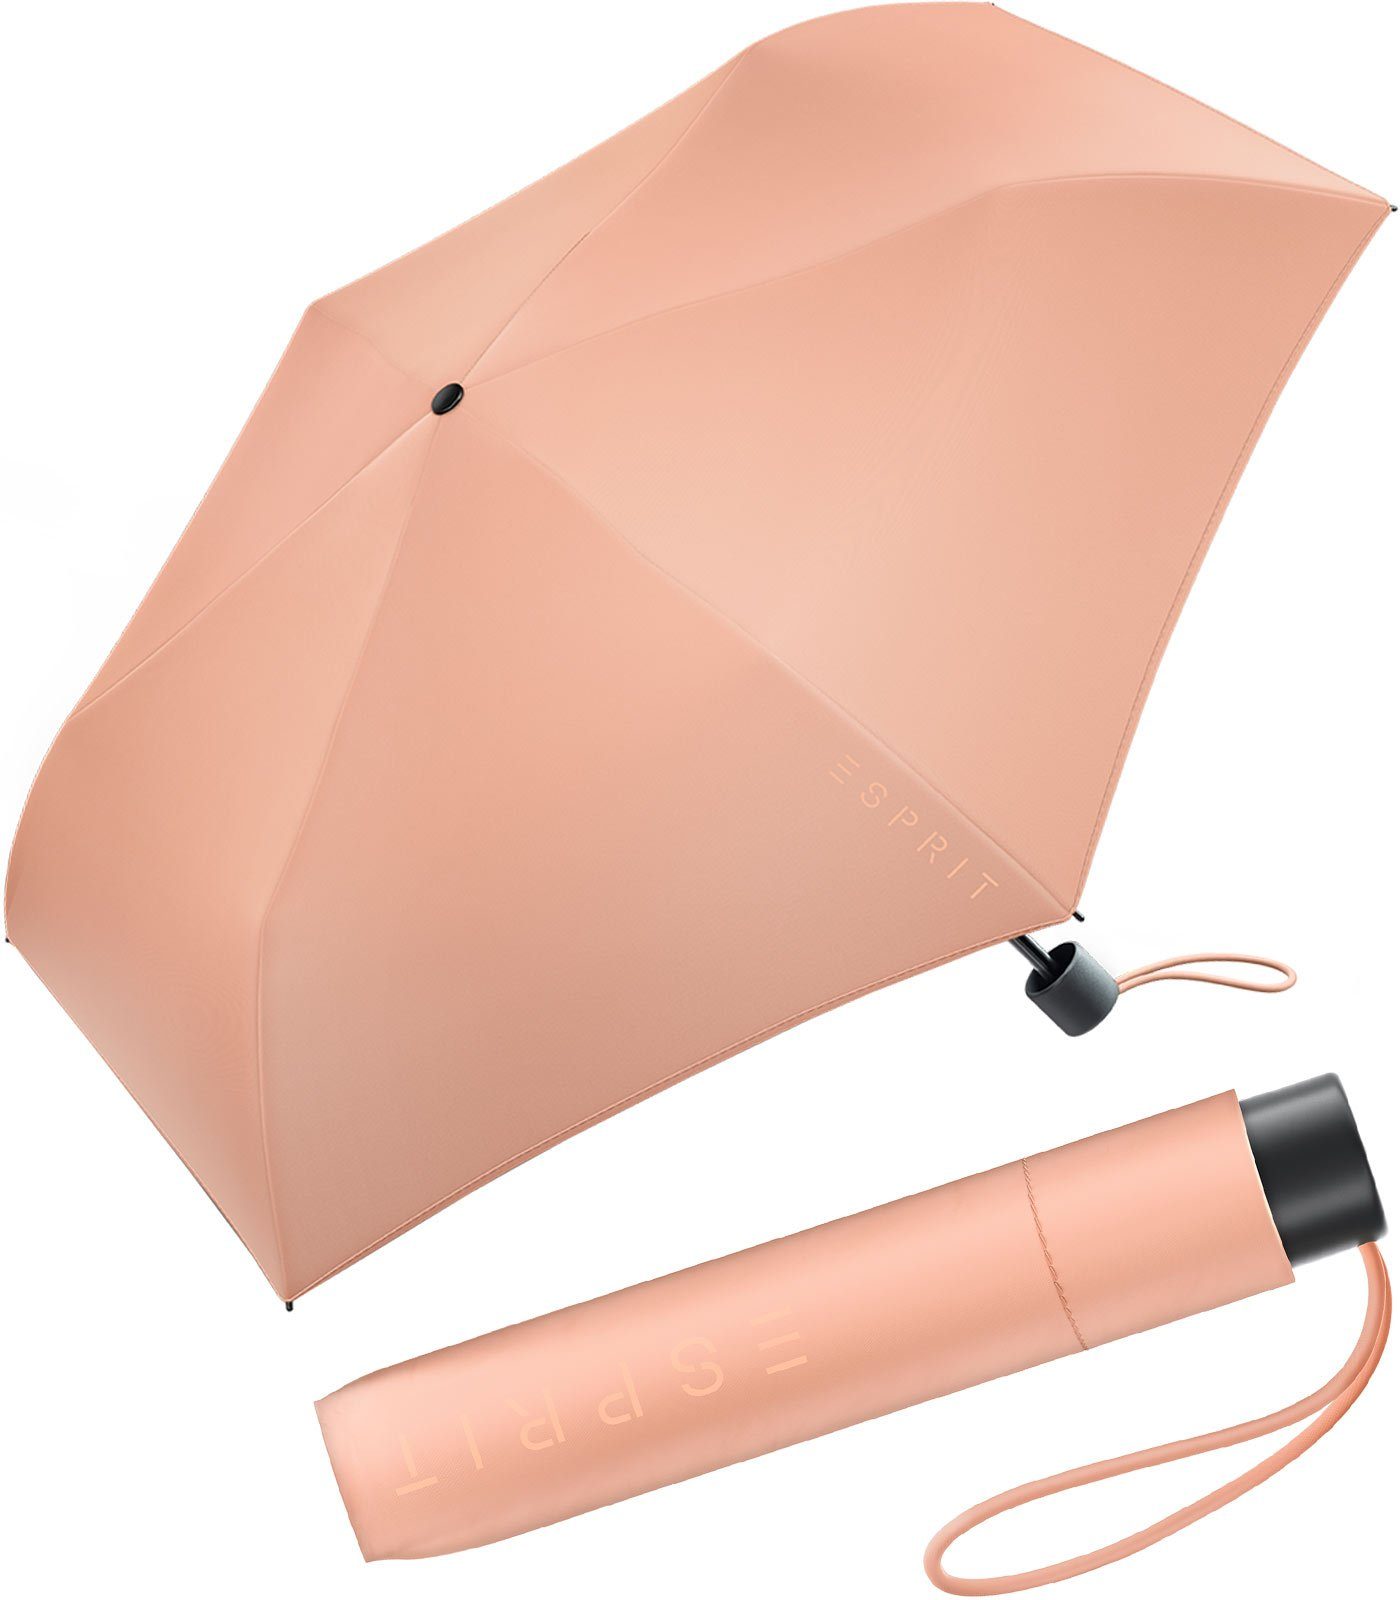 Damen Regenschirme Esprit Taschenregenschirm Mini Regenschirm Damen Slimline FJ 2022, sehr leicht, in den neuen Trendfarben